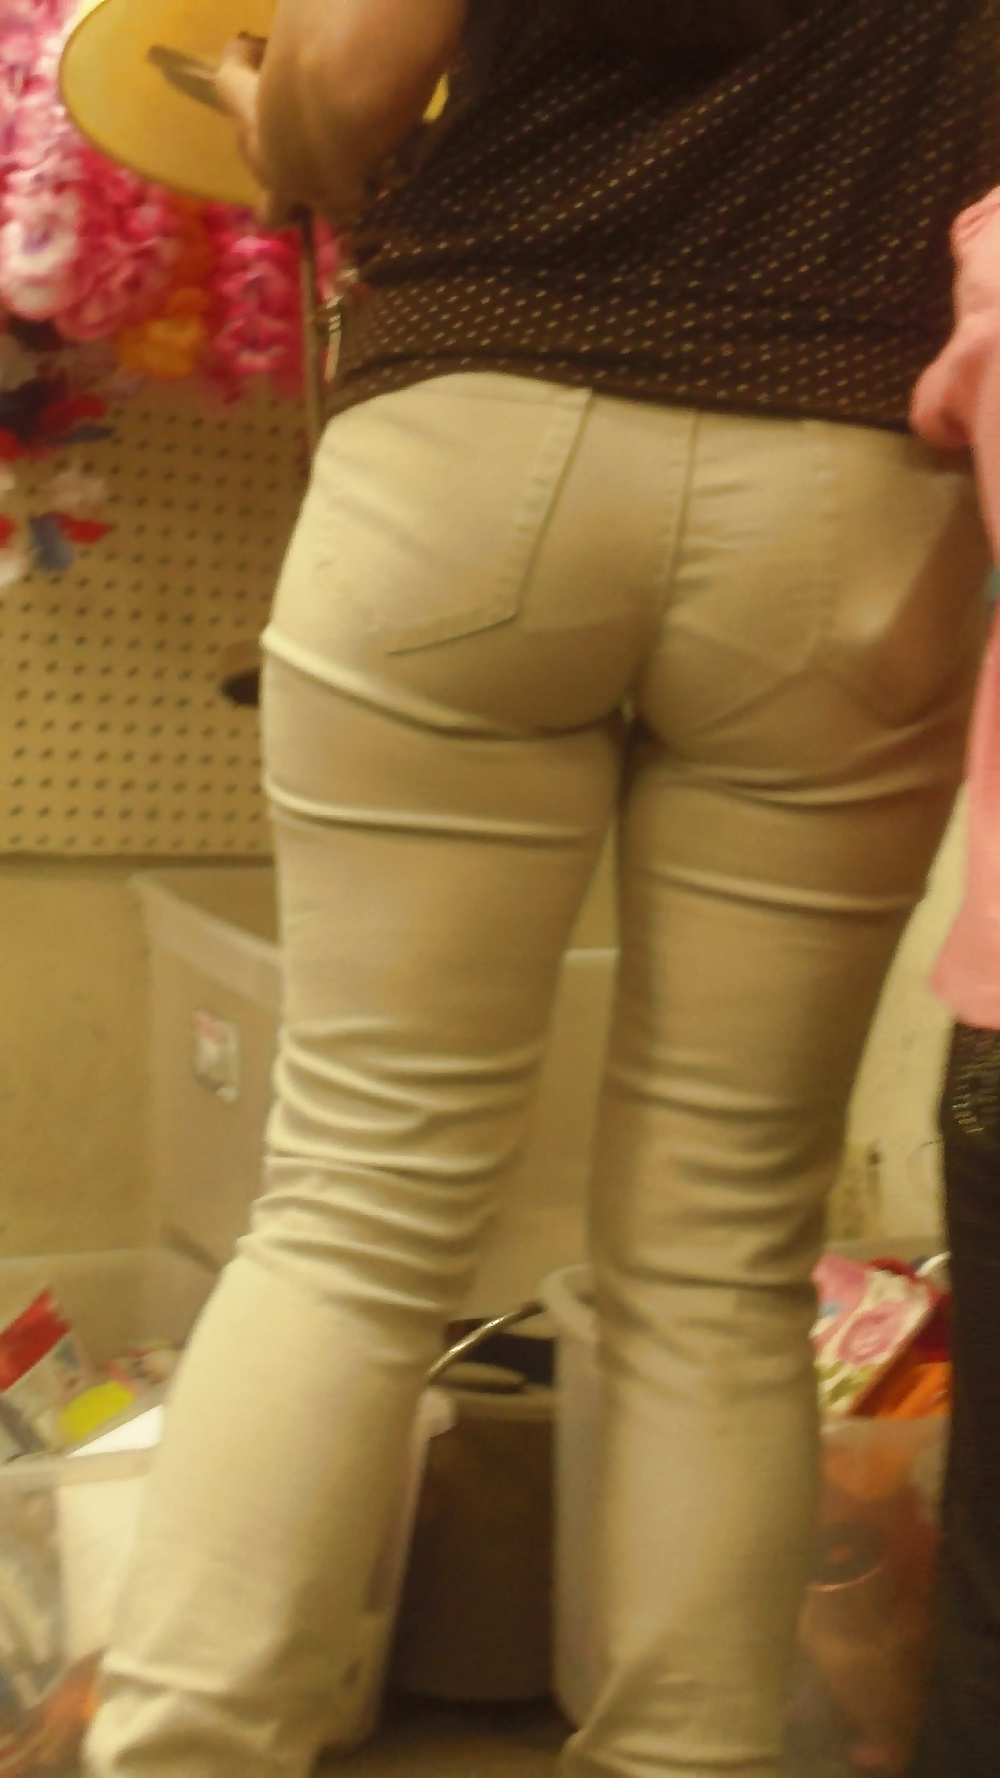 Popular teen girls ass & butt in jeans Part 6 #32010016